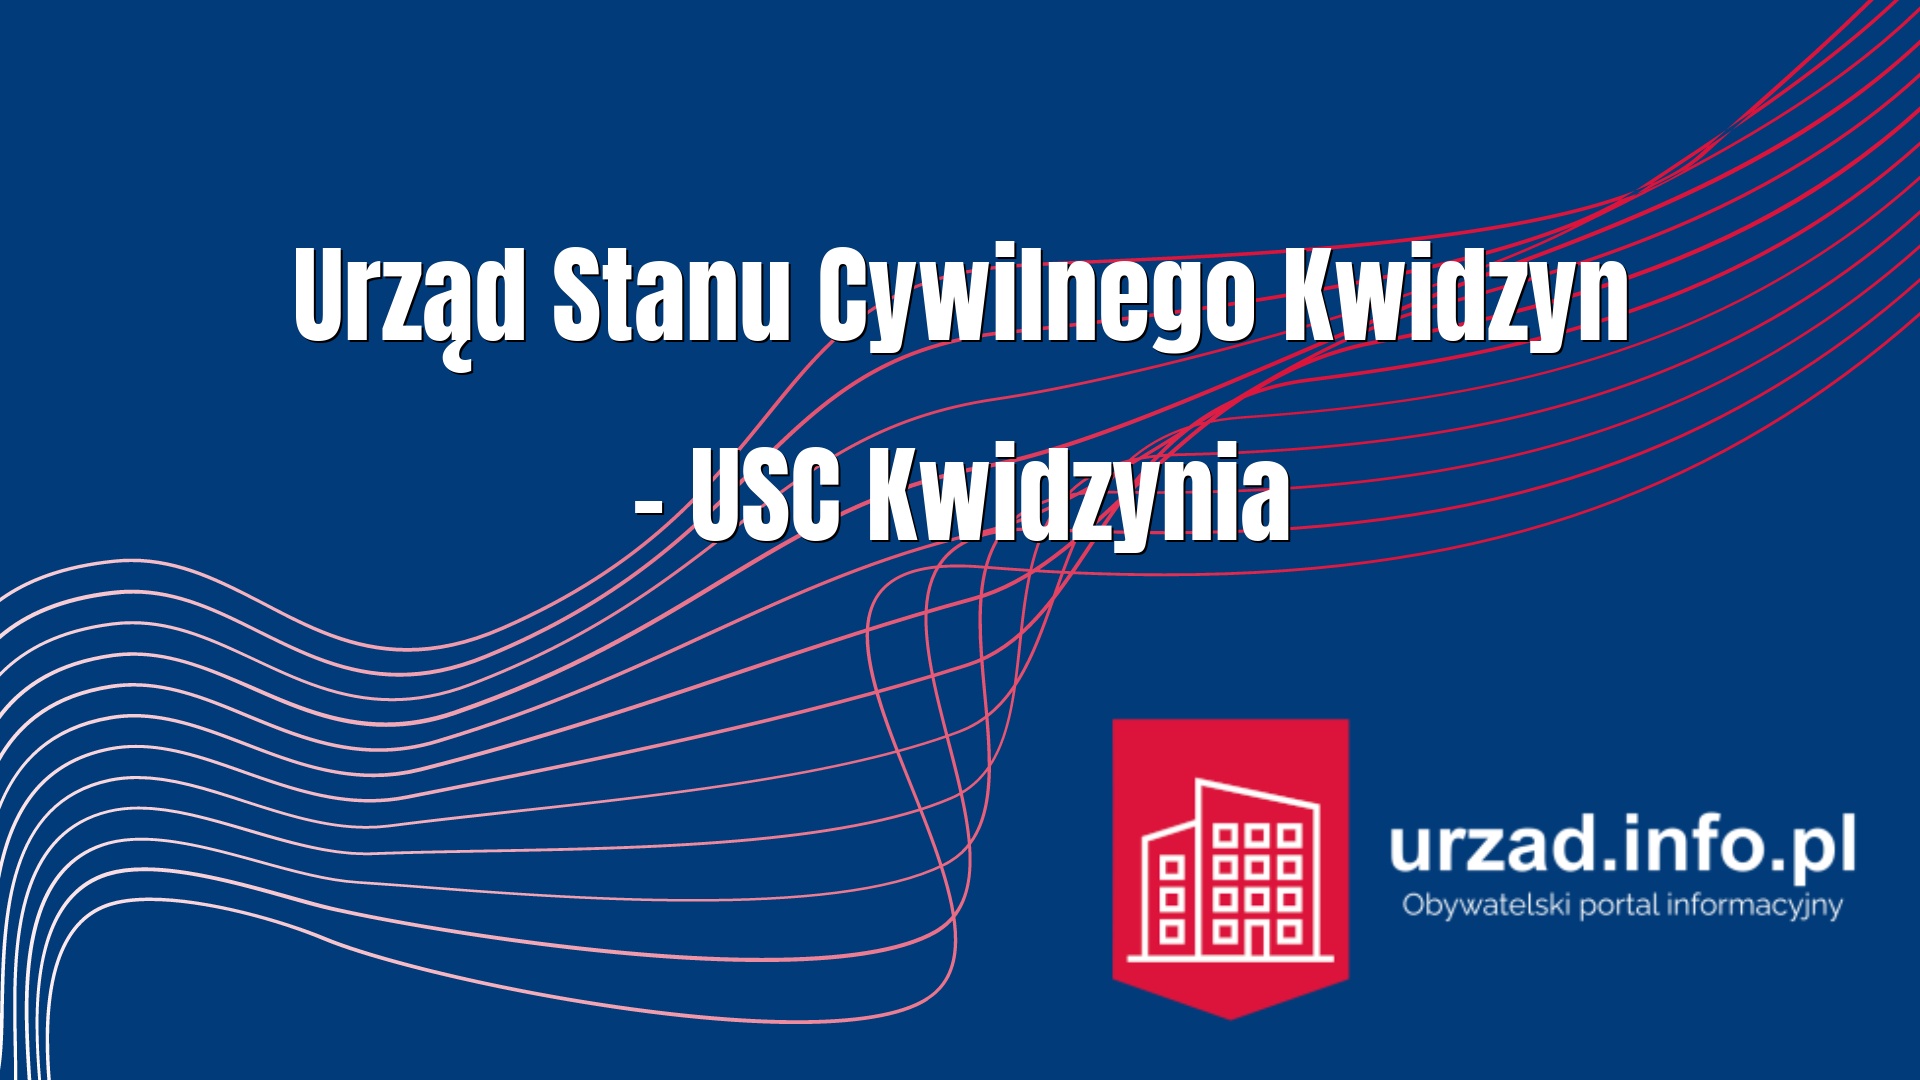 Urząd Stanu Cywilnego Kwidzyn – USC Kwidzynia